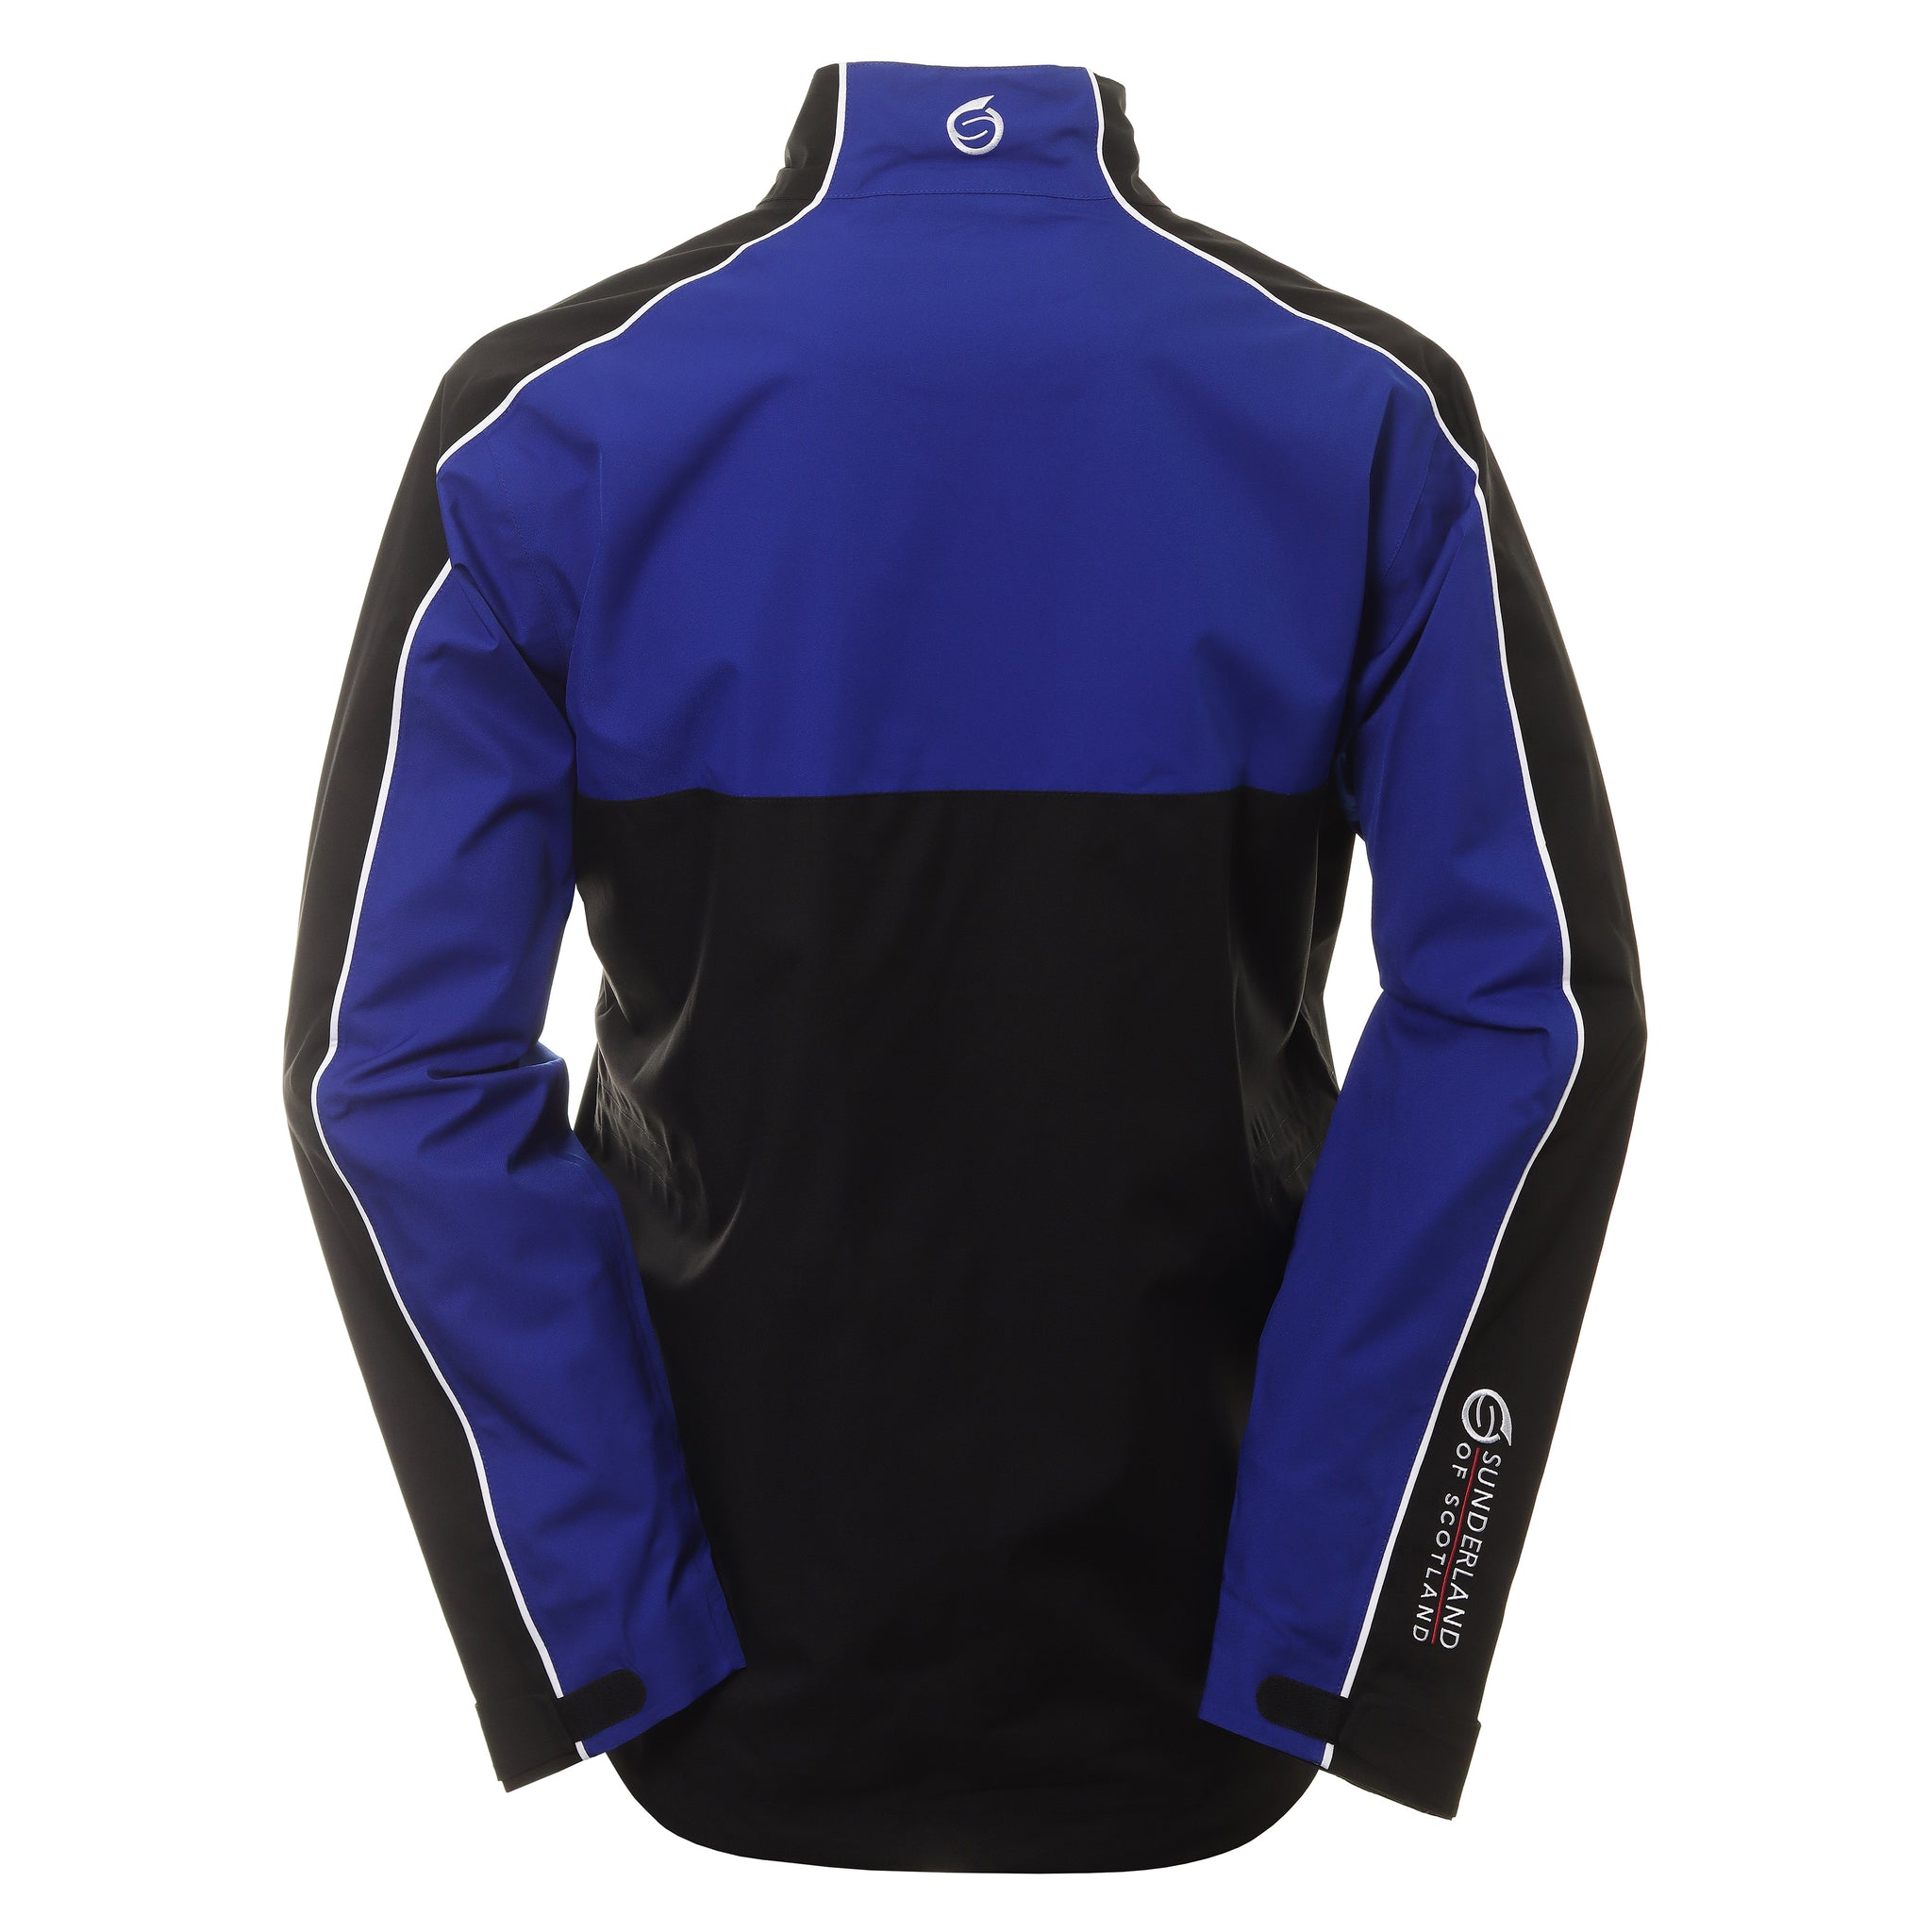 sunderland-golf-matterhorn-waterproof-jacket-sunmr91-mat-black-electric-blue-white